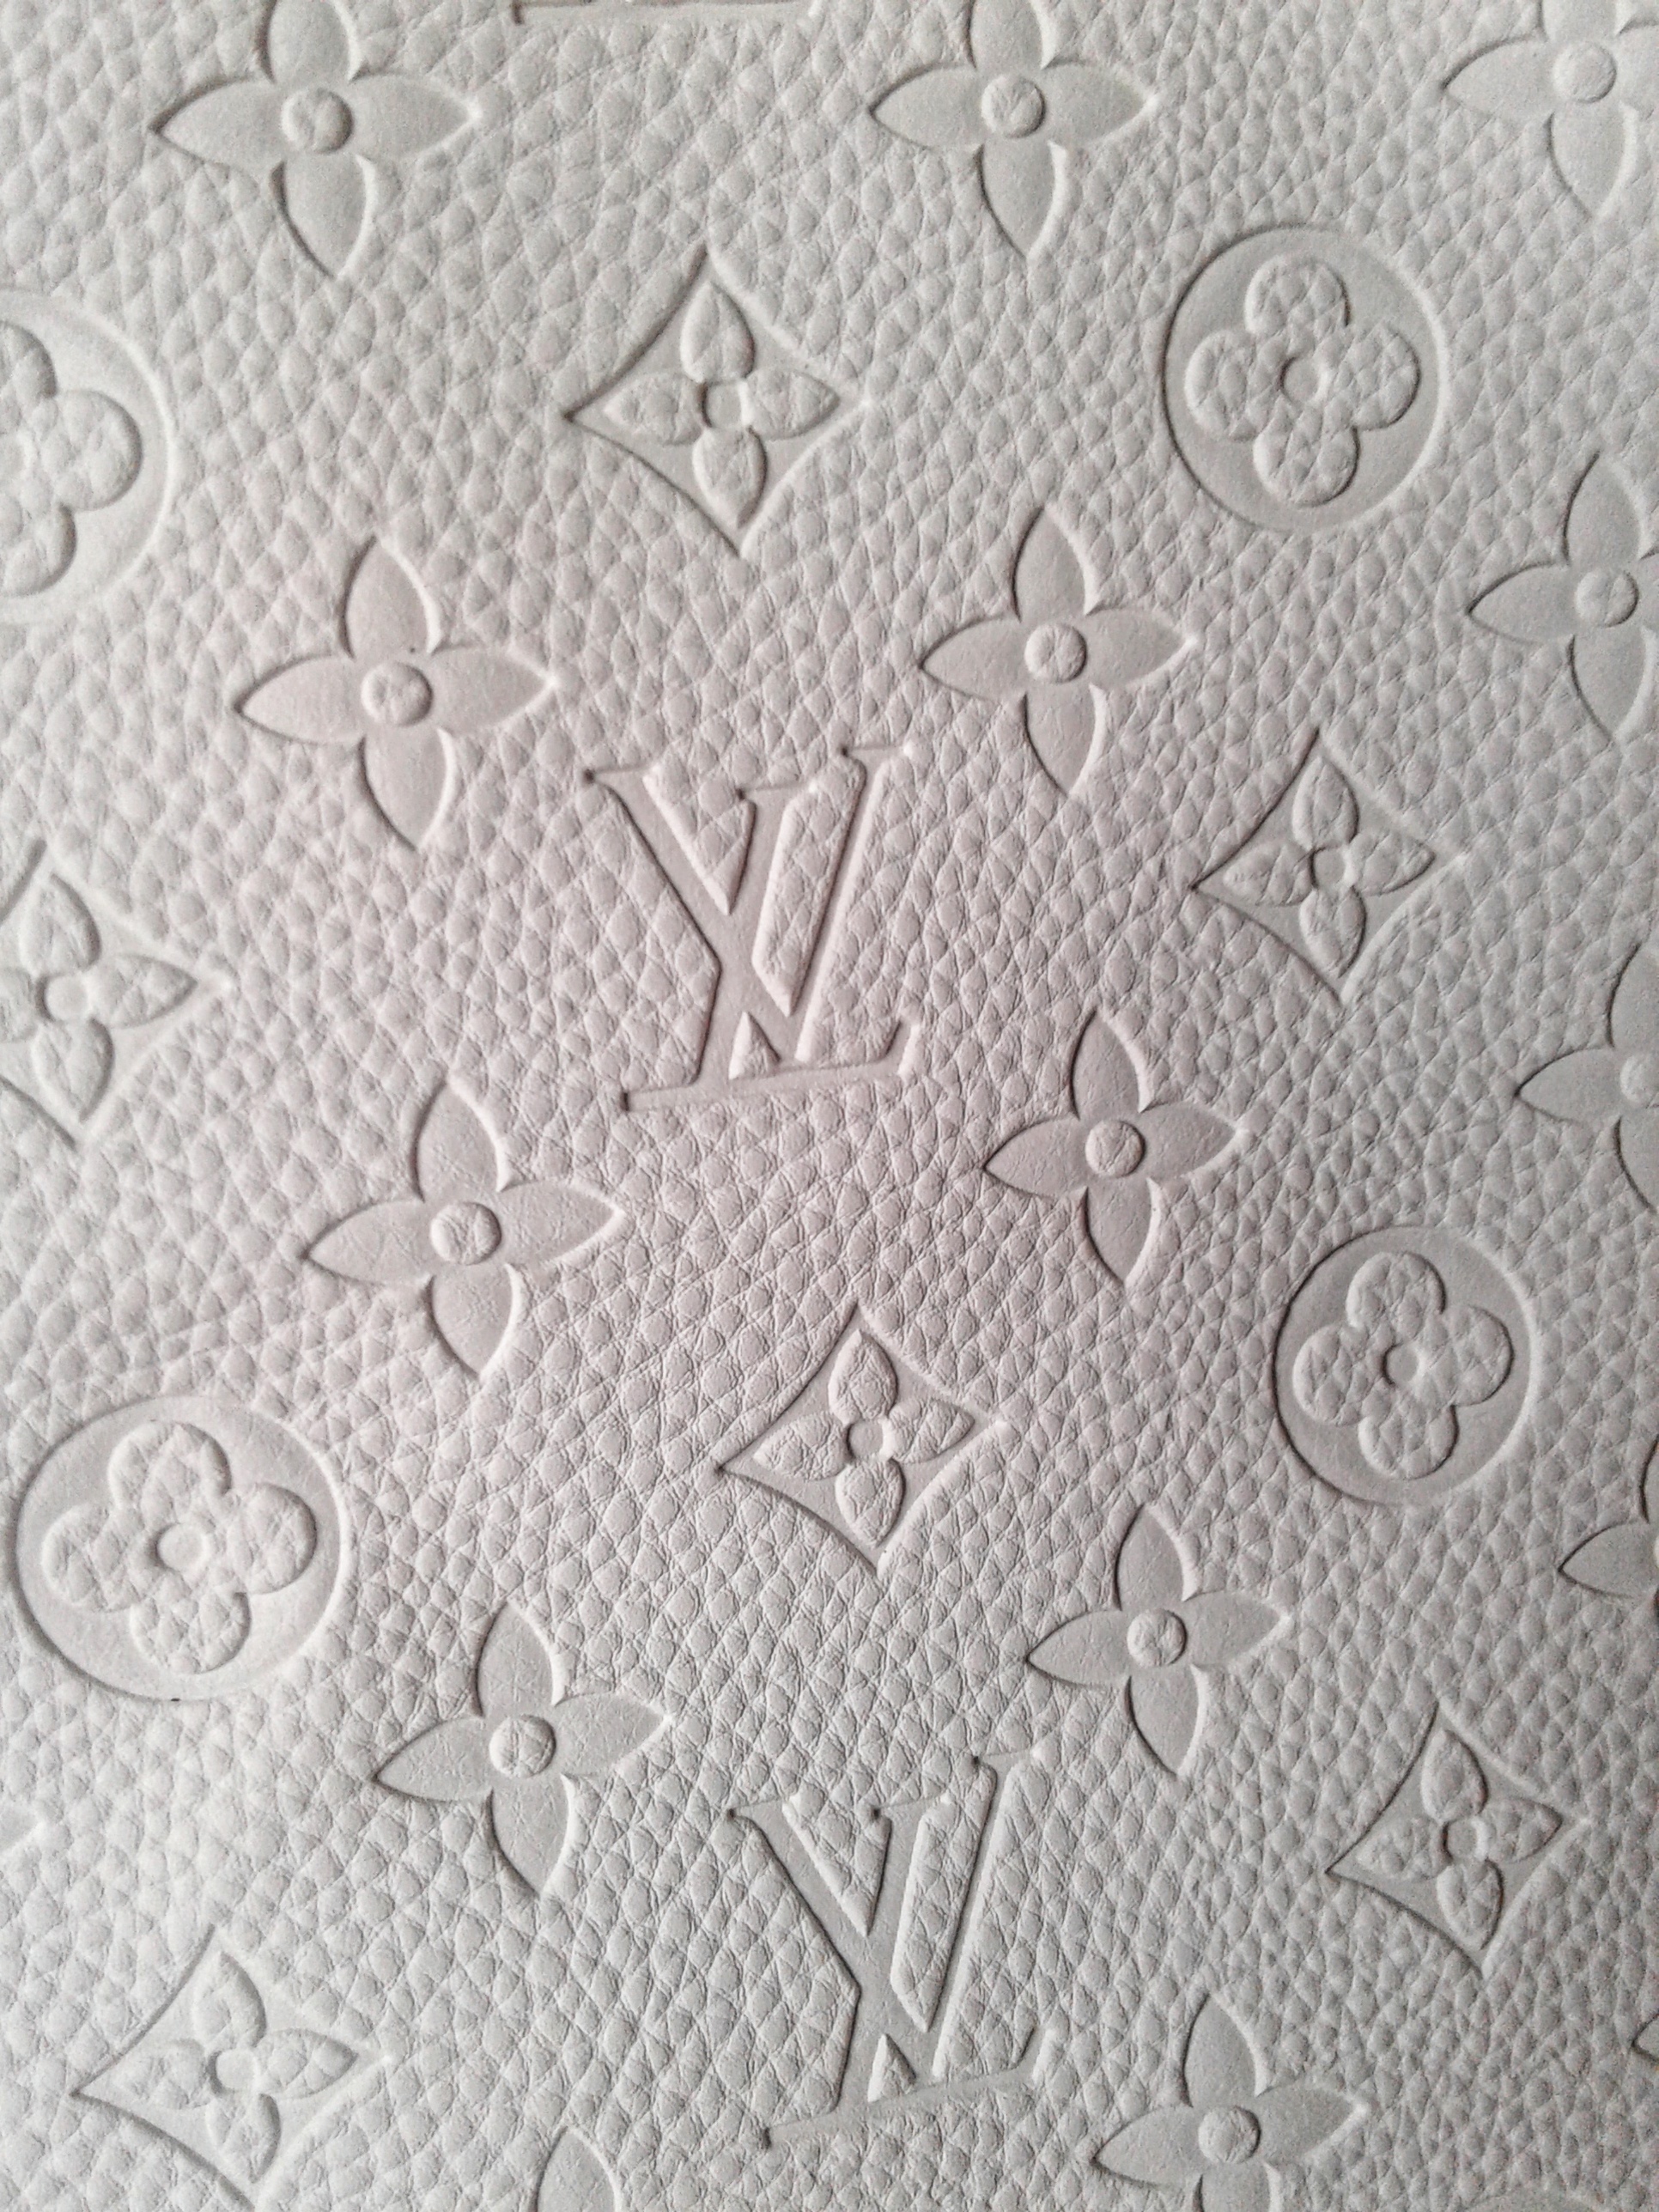 Louis Vuitton faux leather.